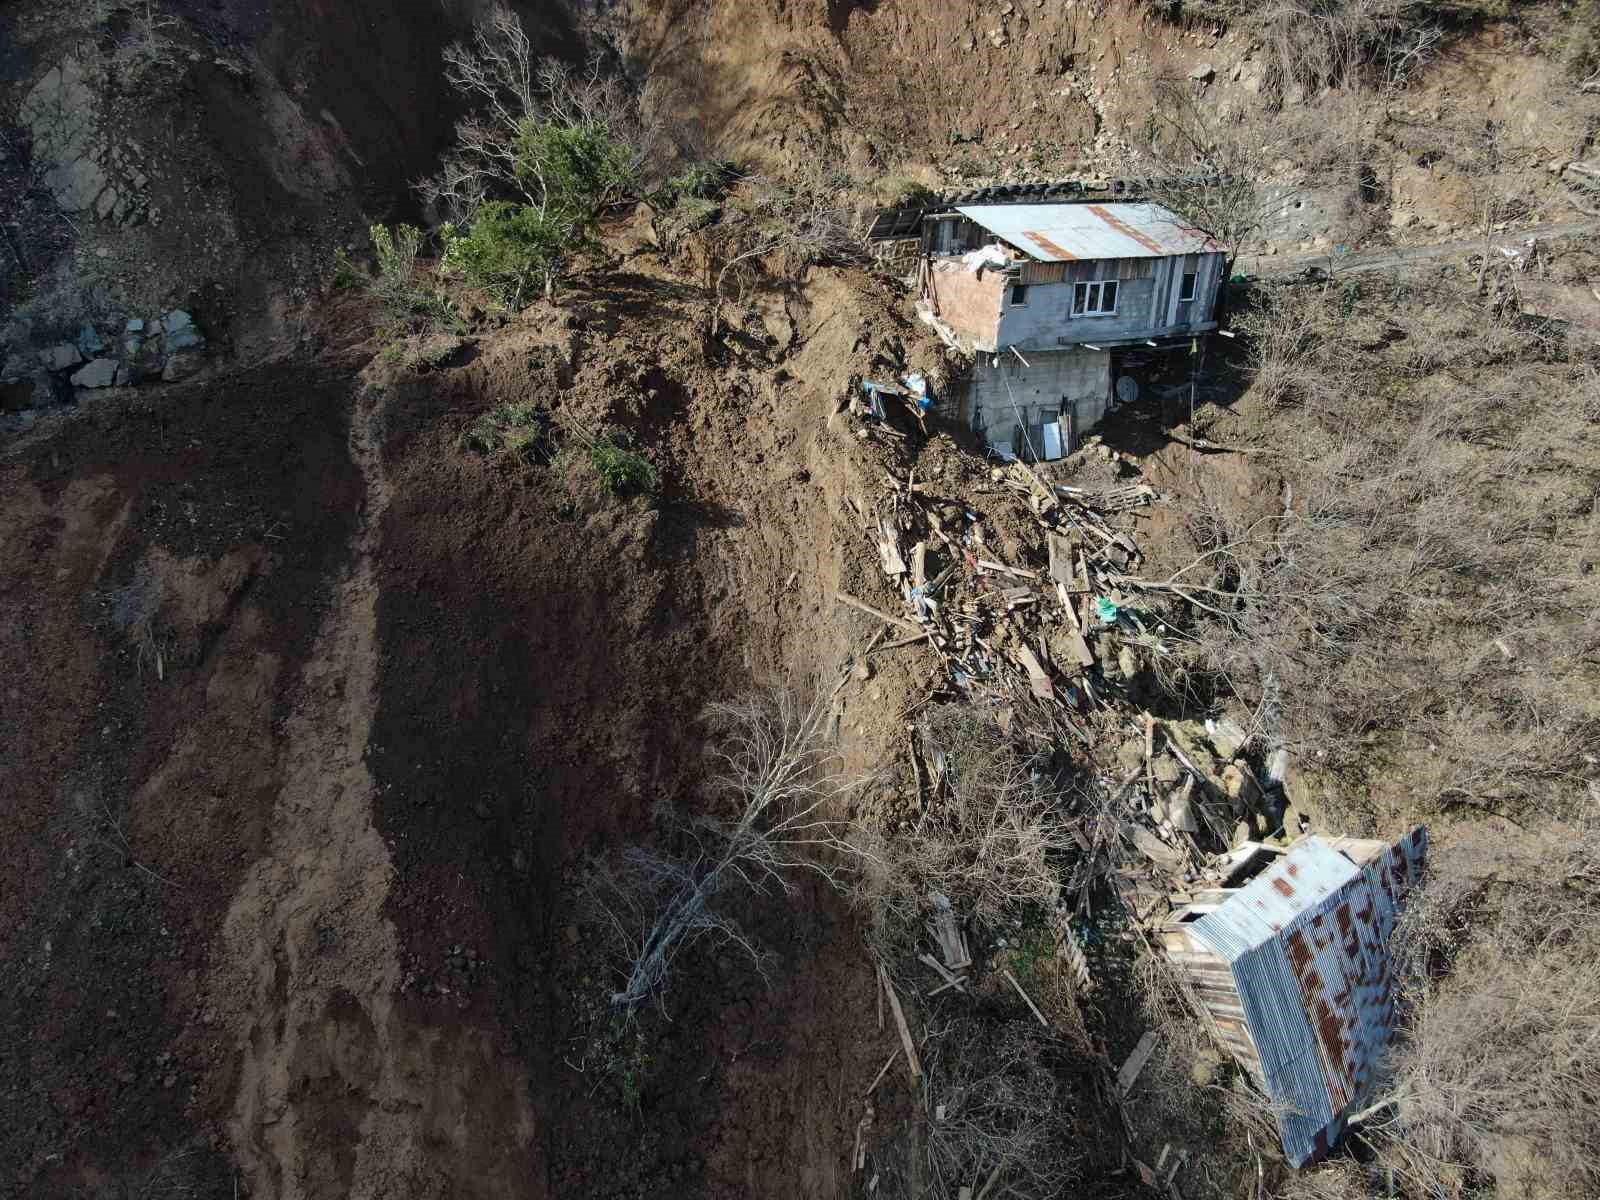 artvinde yamactan kopan topraklar evlerin icerisine doldu 10 bina zarar gordu 3 TayKgN9E